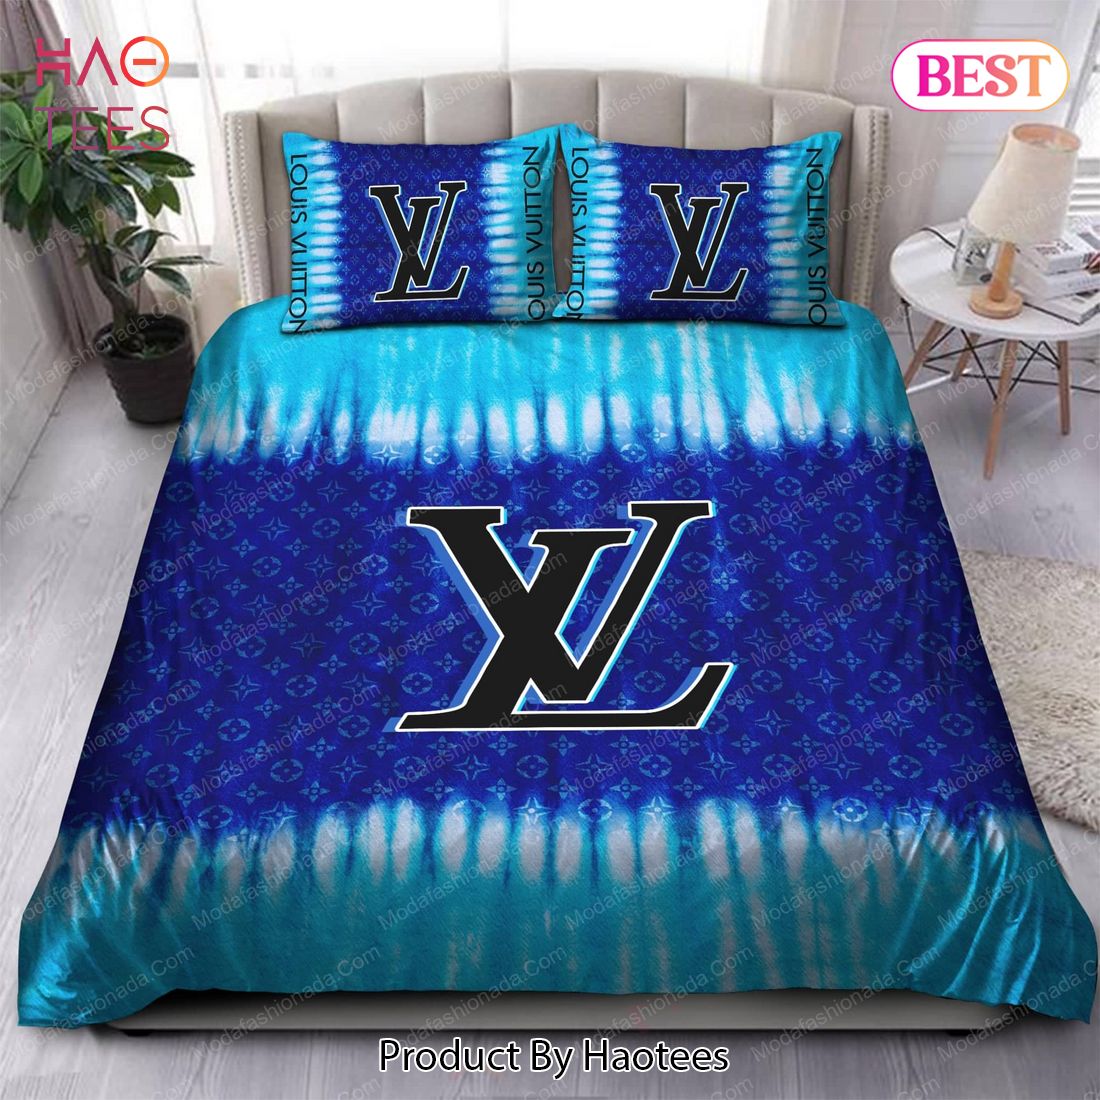 Tie Dye Louis Vuitton Bedding Sets 01 Bed Sets, Bedroom Sets, Comforter Sets, Duvet Cover, Bedspread